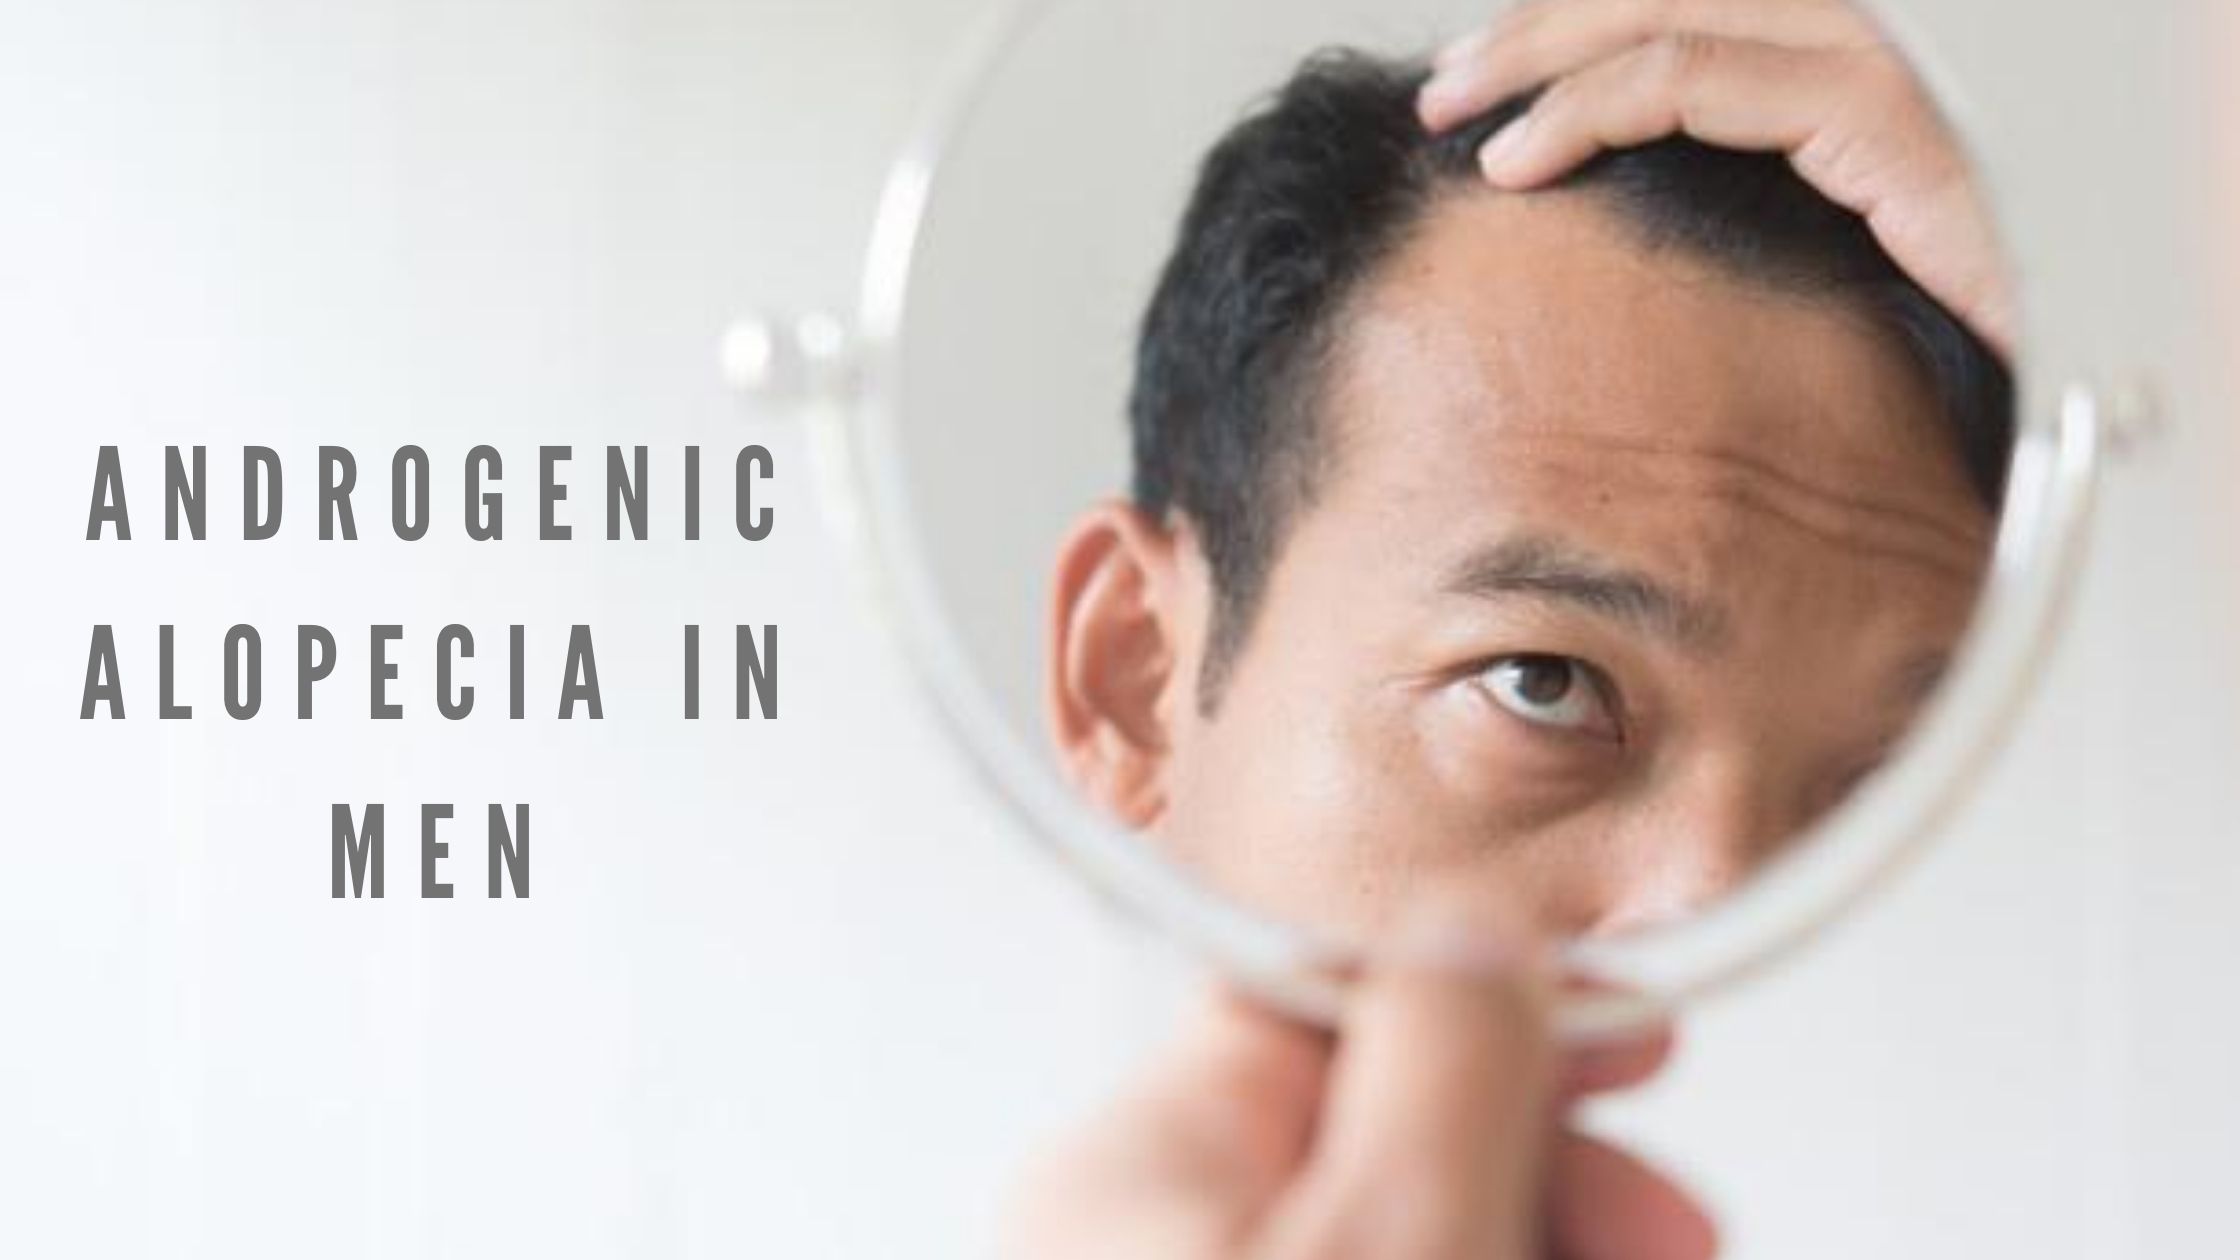 Androgenic alopecia in men